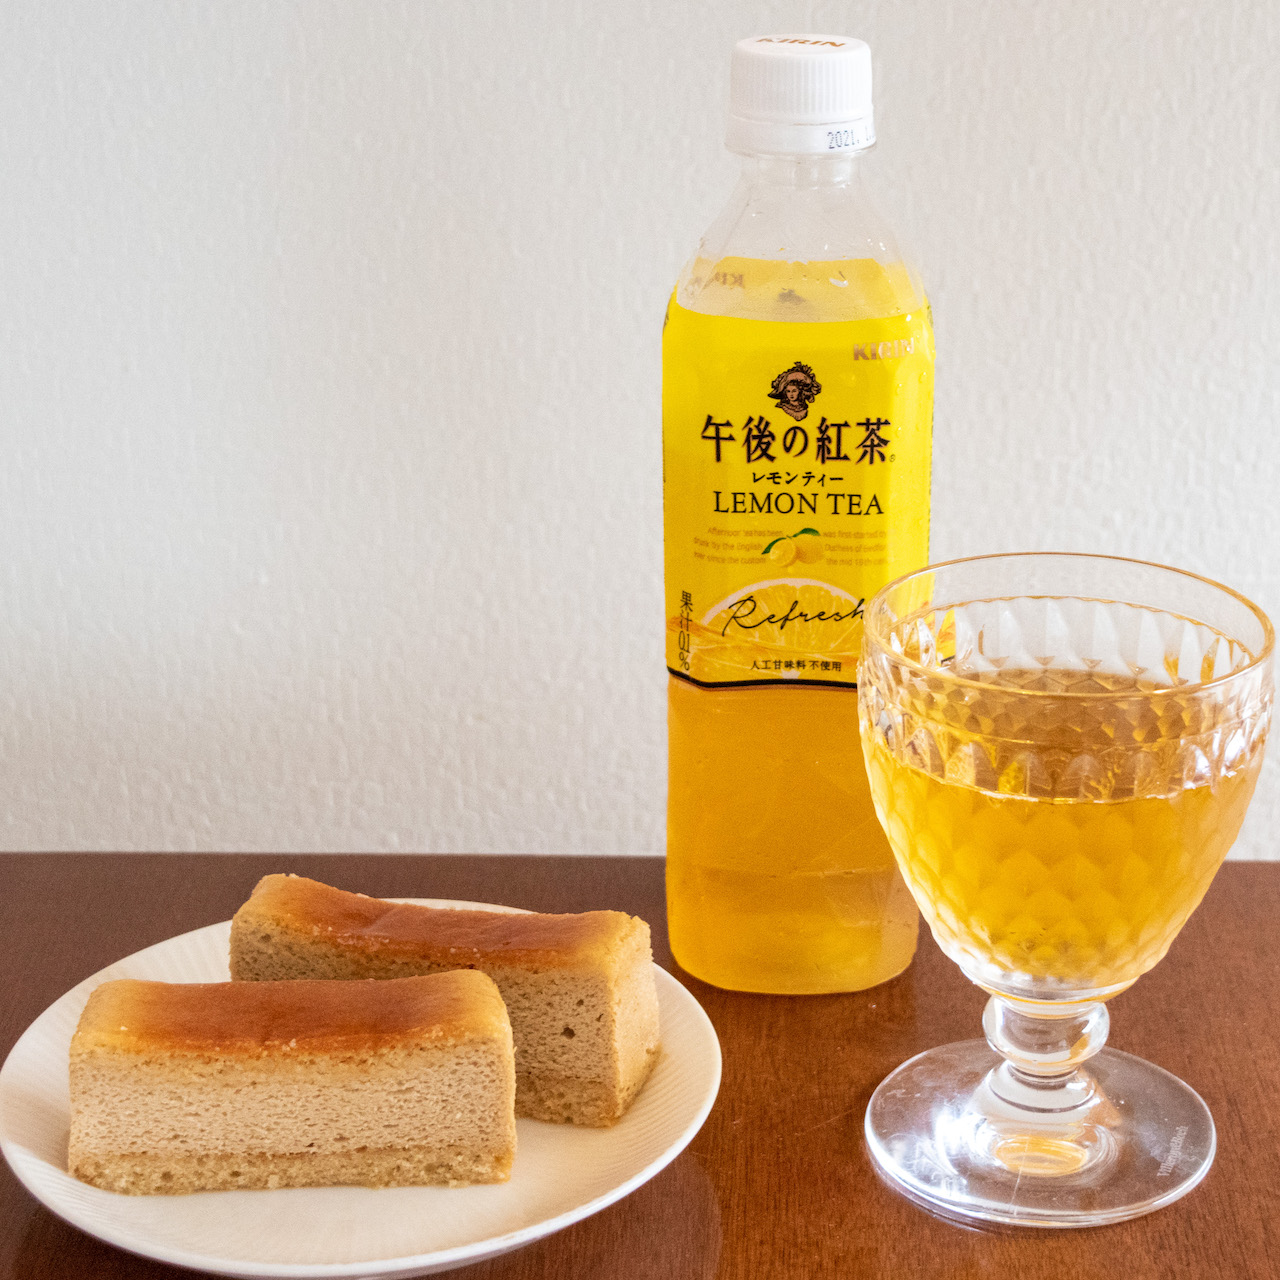 「キリン 午後の紅茶 レモンティー」レモンの香りが更に広がる。